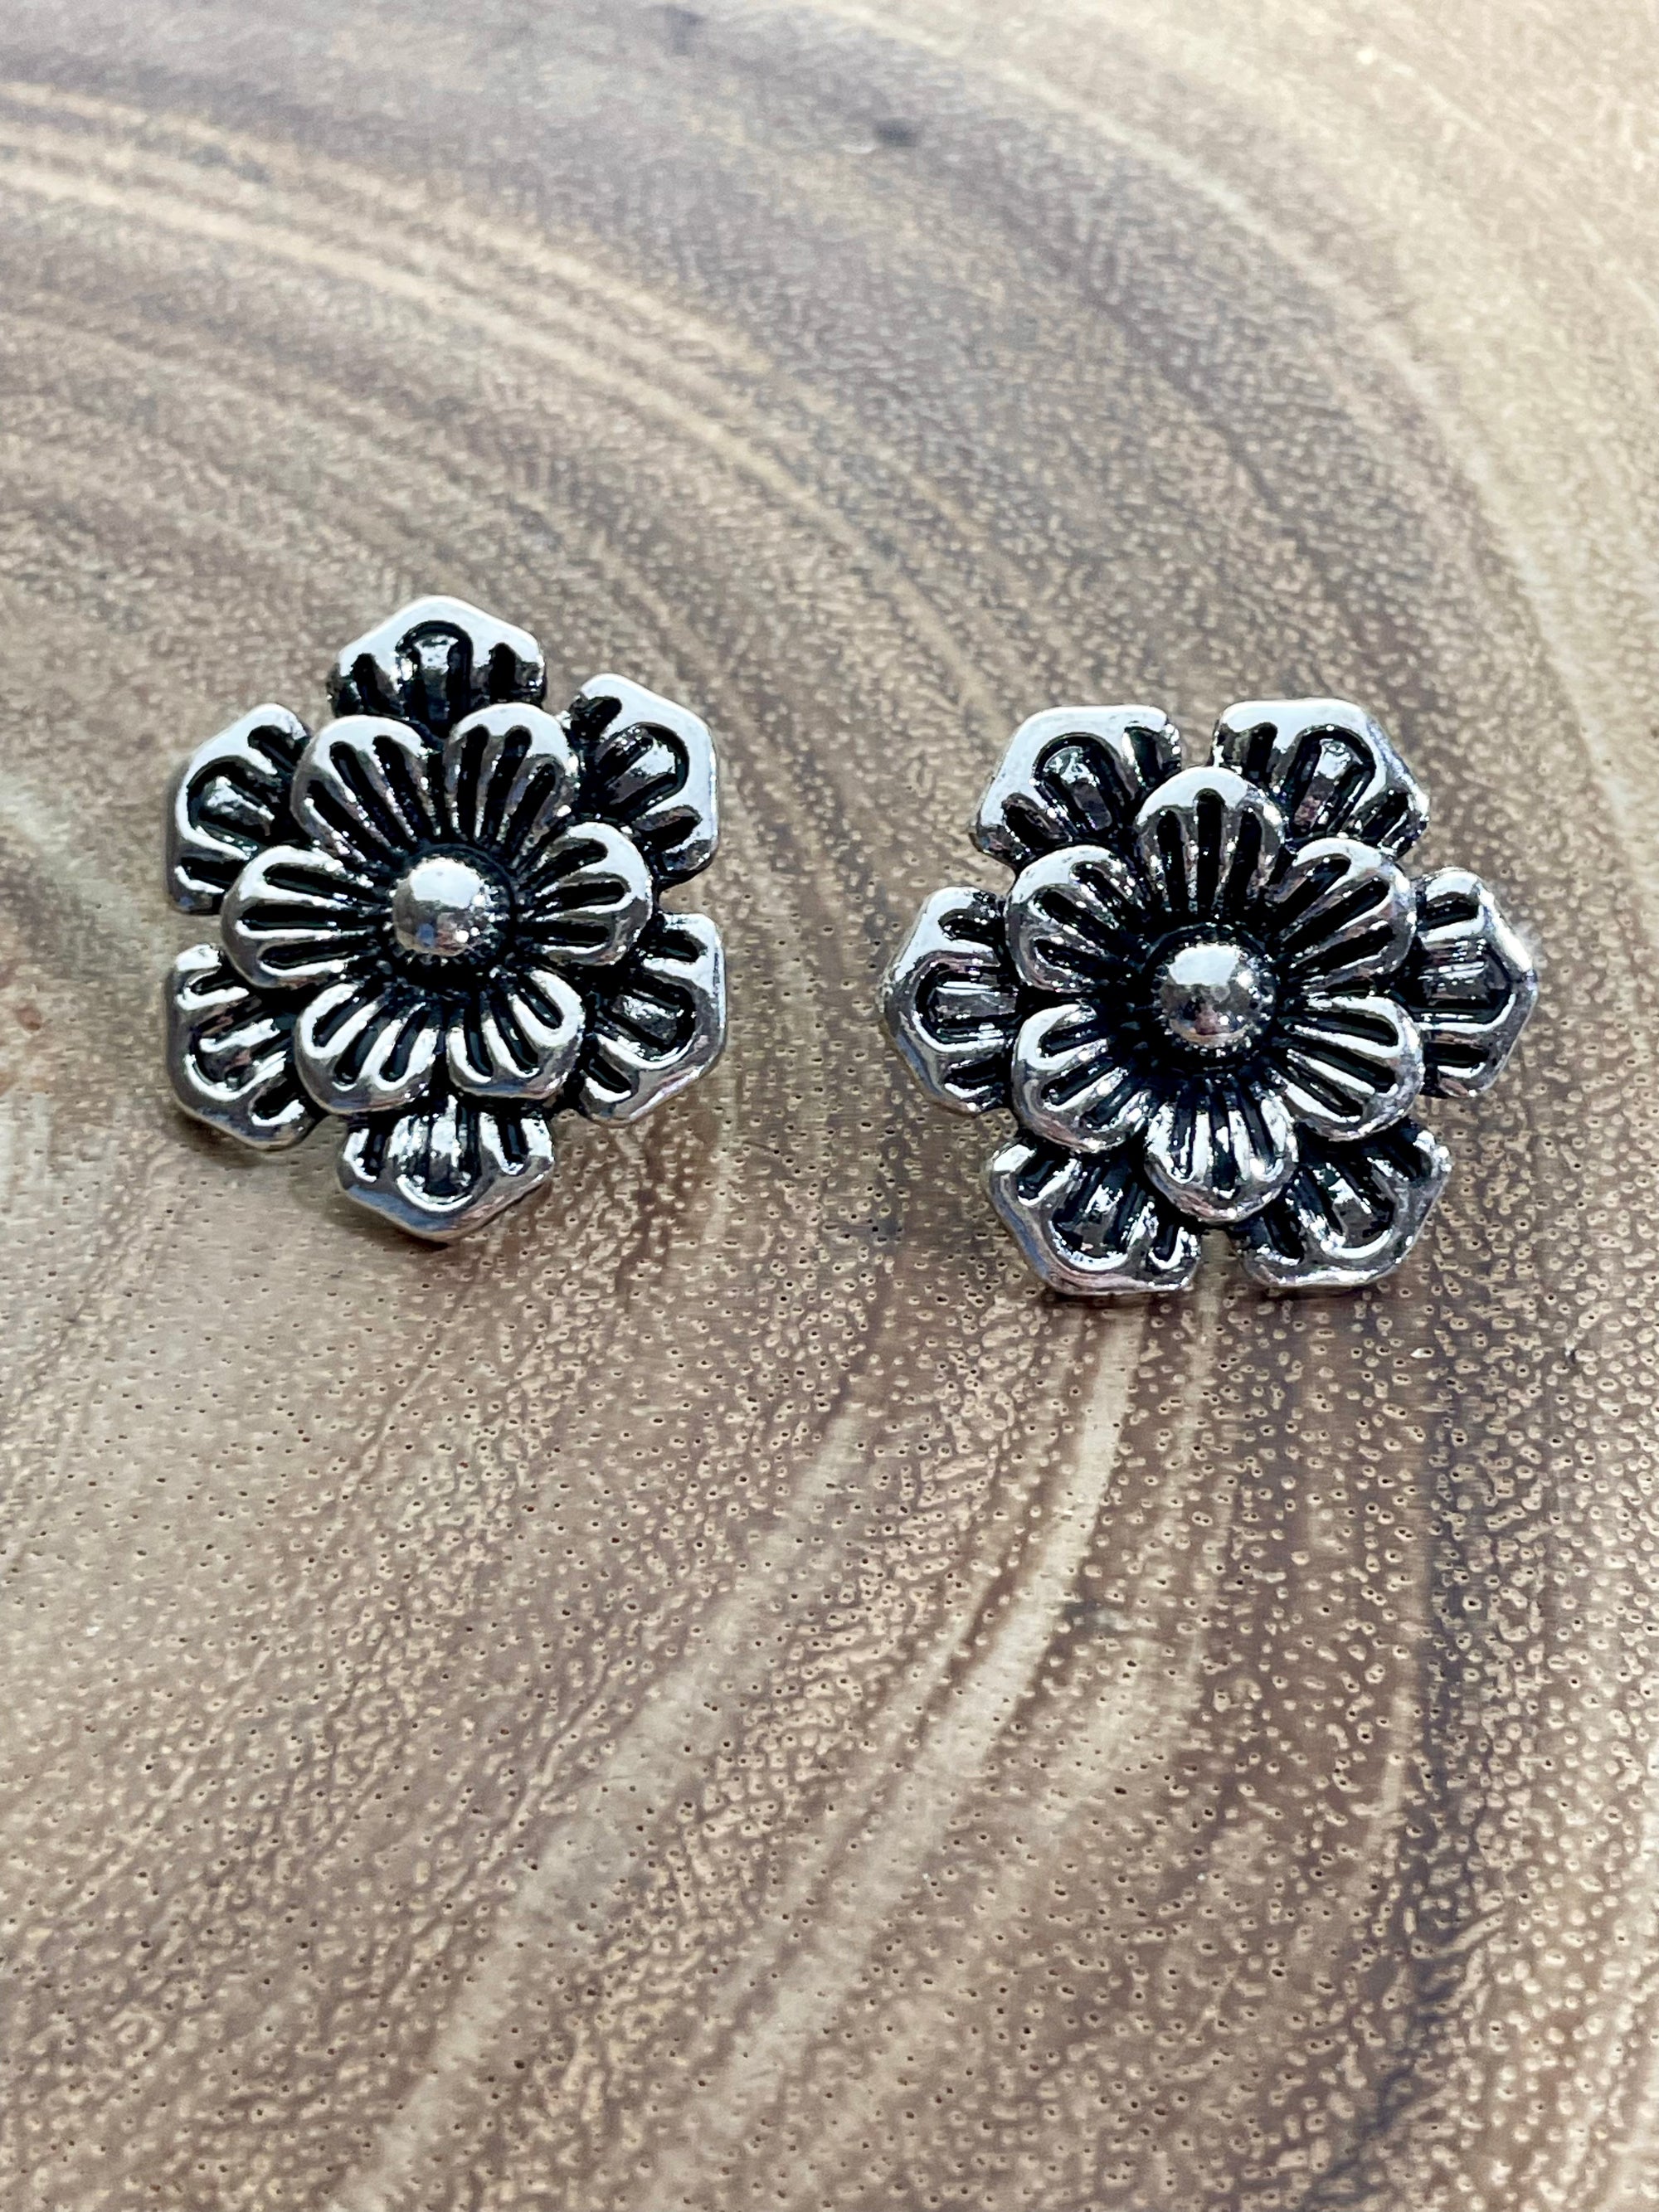 Kauri Stamped Silver Flower Earrings - 1.15"